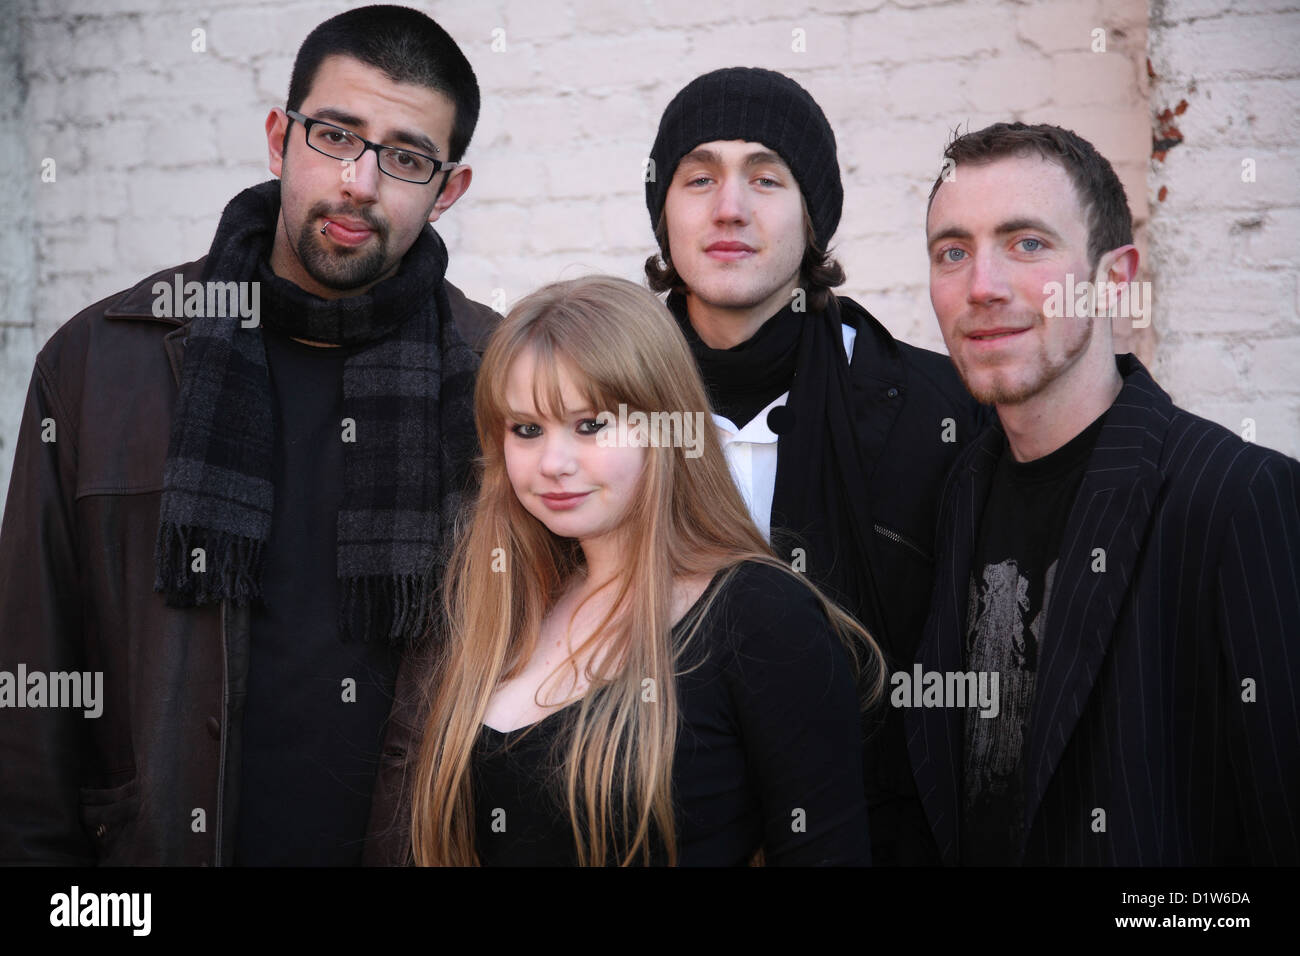 Un groupe d'amis adolescents qui ont formé un groupe de rock heavy metal, dupant autour pendant une séance photo Banque D'Images